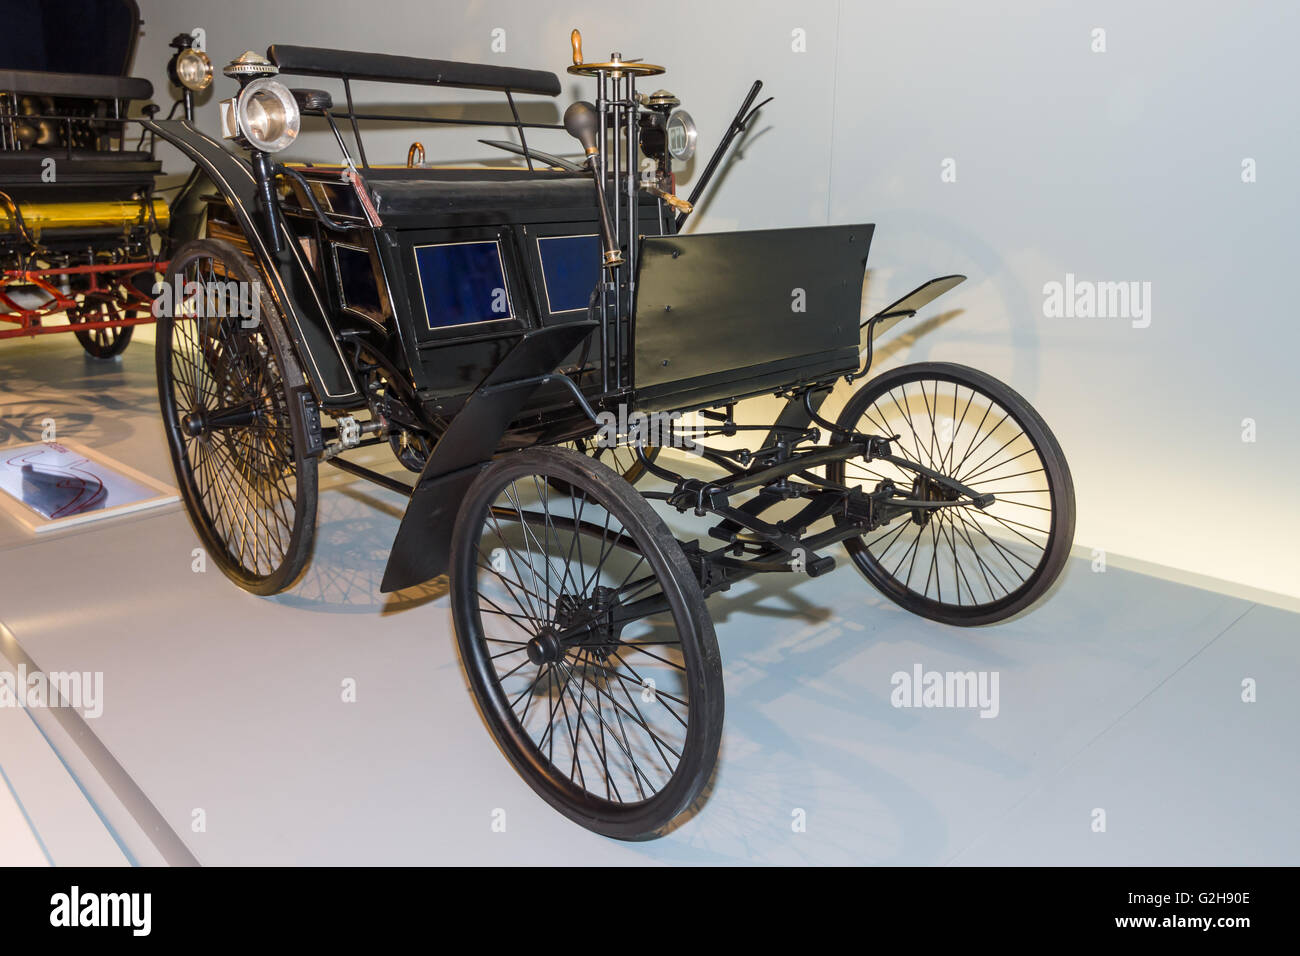 STUTTGART, Deutschland - 19. März 2016: Benz Motor Veloziped auch bekannt als Velo, 1884. Mercedes-Benz Museum. Stockfoto